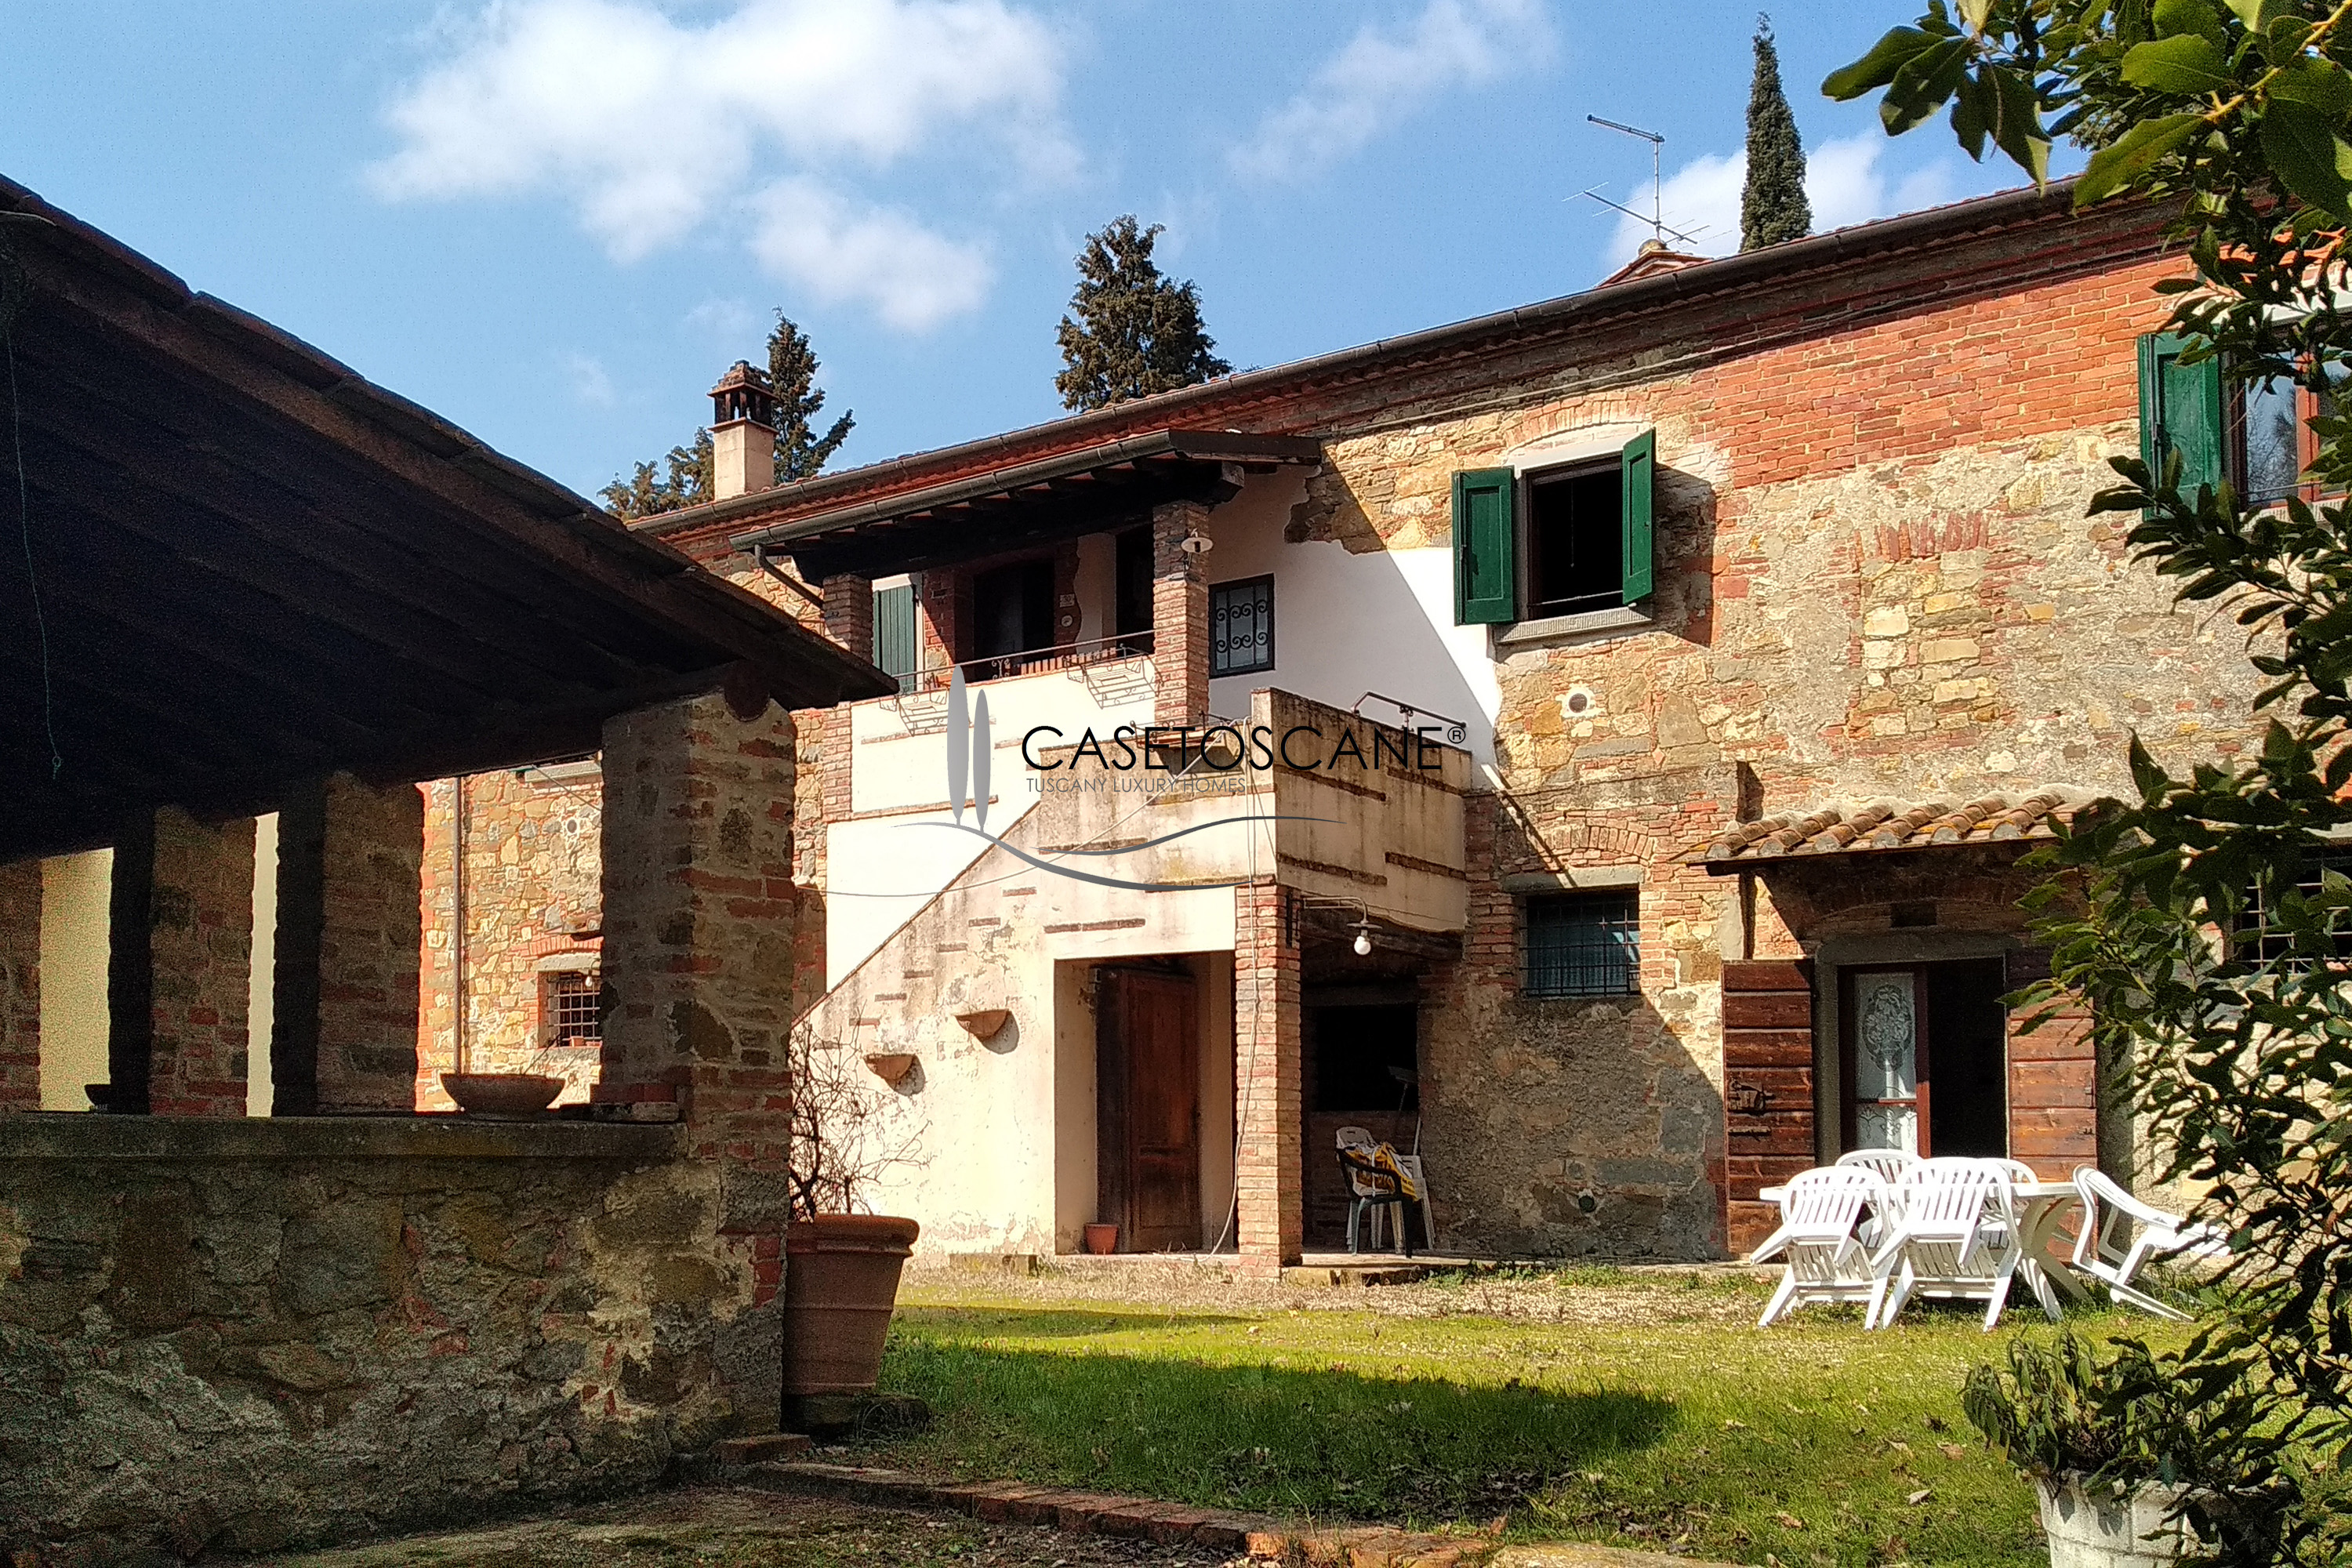 2455 - Casale ristrutturato di mq.360 con tre appartamenti, ampi annessi circostanti e giardino di oltre mq.6.000 a Lucignano (AR).